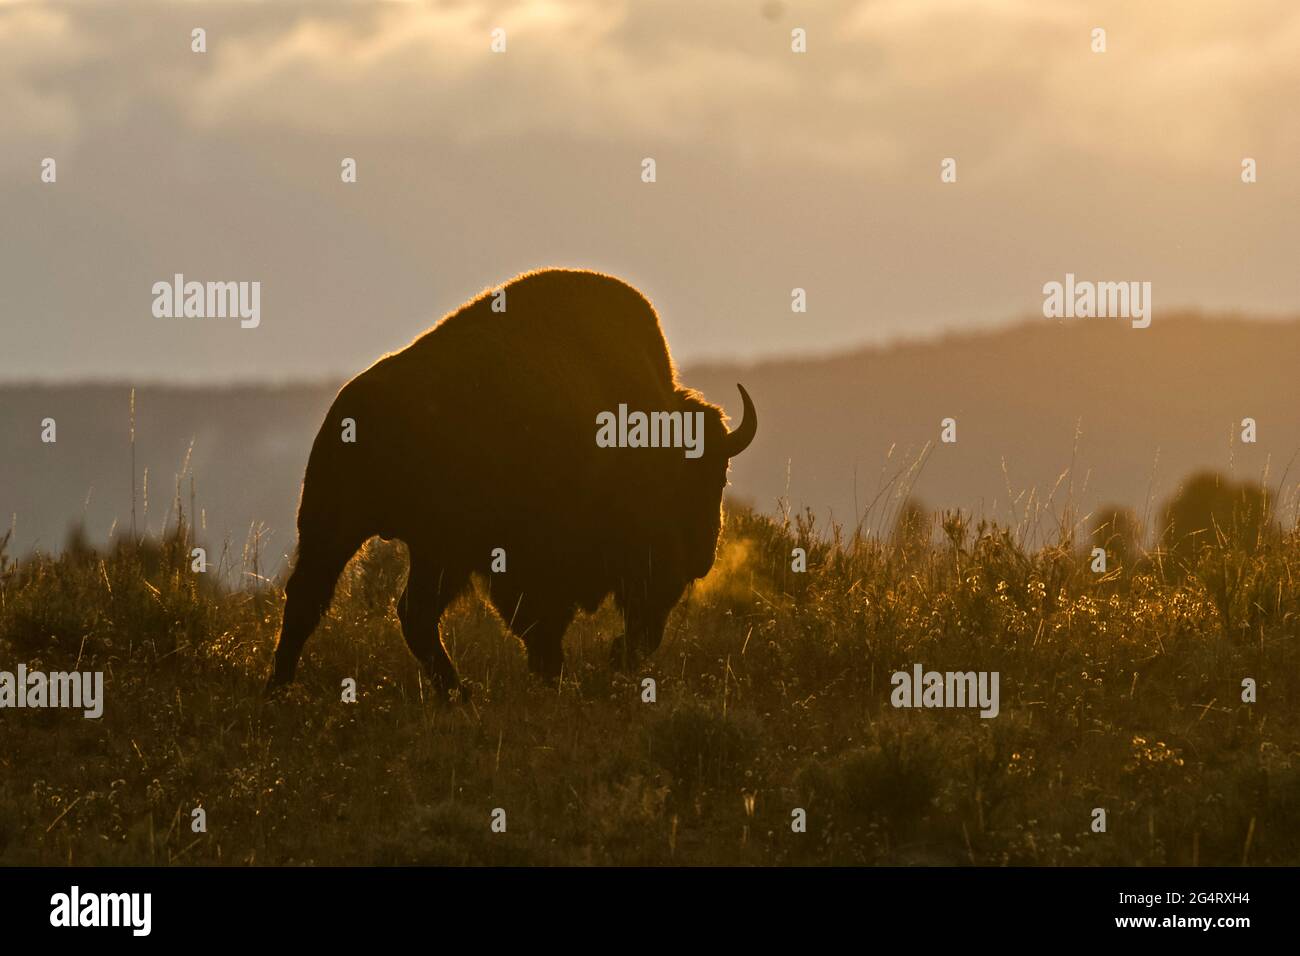 Bison américaine (Bison bison). Parc national de Yellowstone, Wyoming, États-Unis. Parc national, parcs nationaux, parcs nationaux Banque D'Images